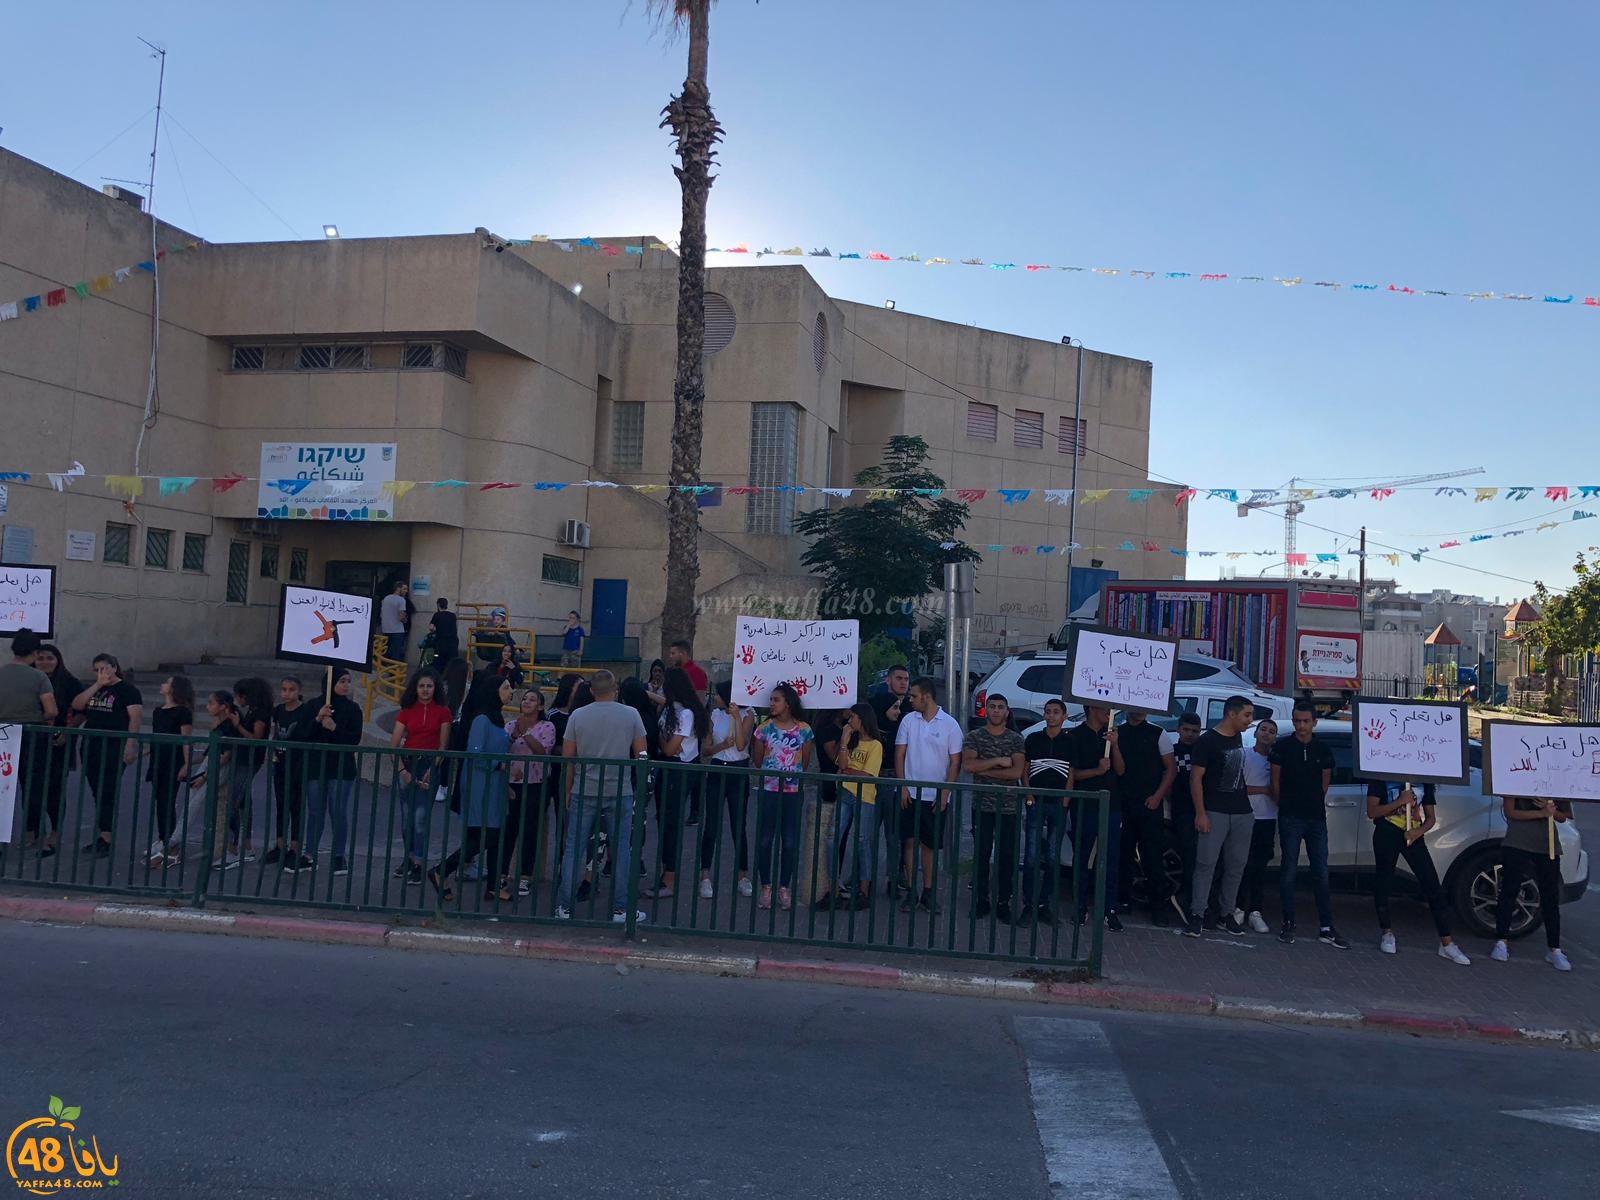 مجموعات الشبيبة في المراكز الجماهيرية تُنظم وقفة احتجاجية ضد العنف في مدينة اللد 